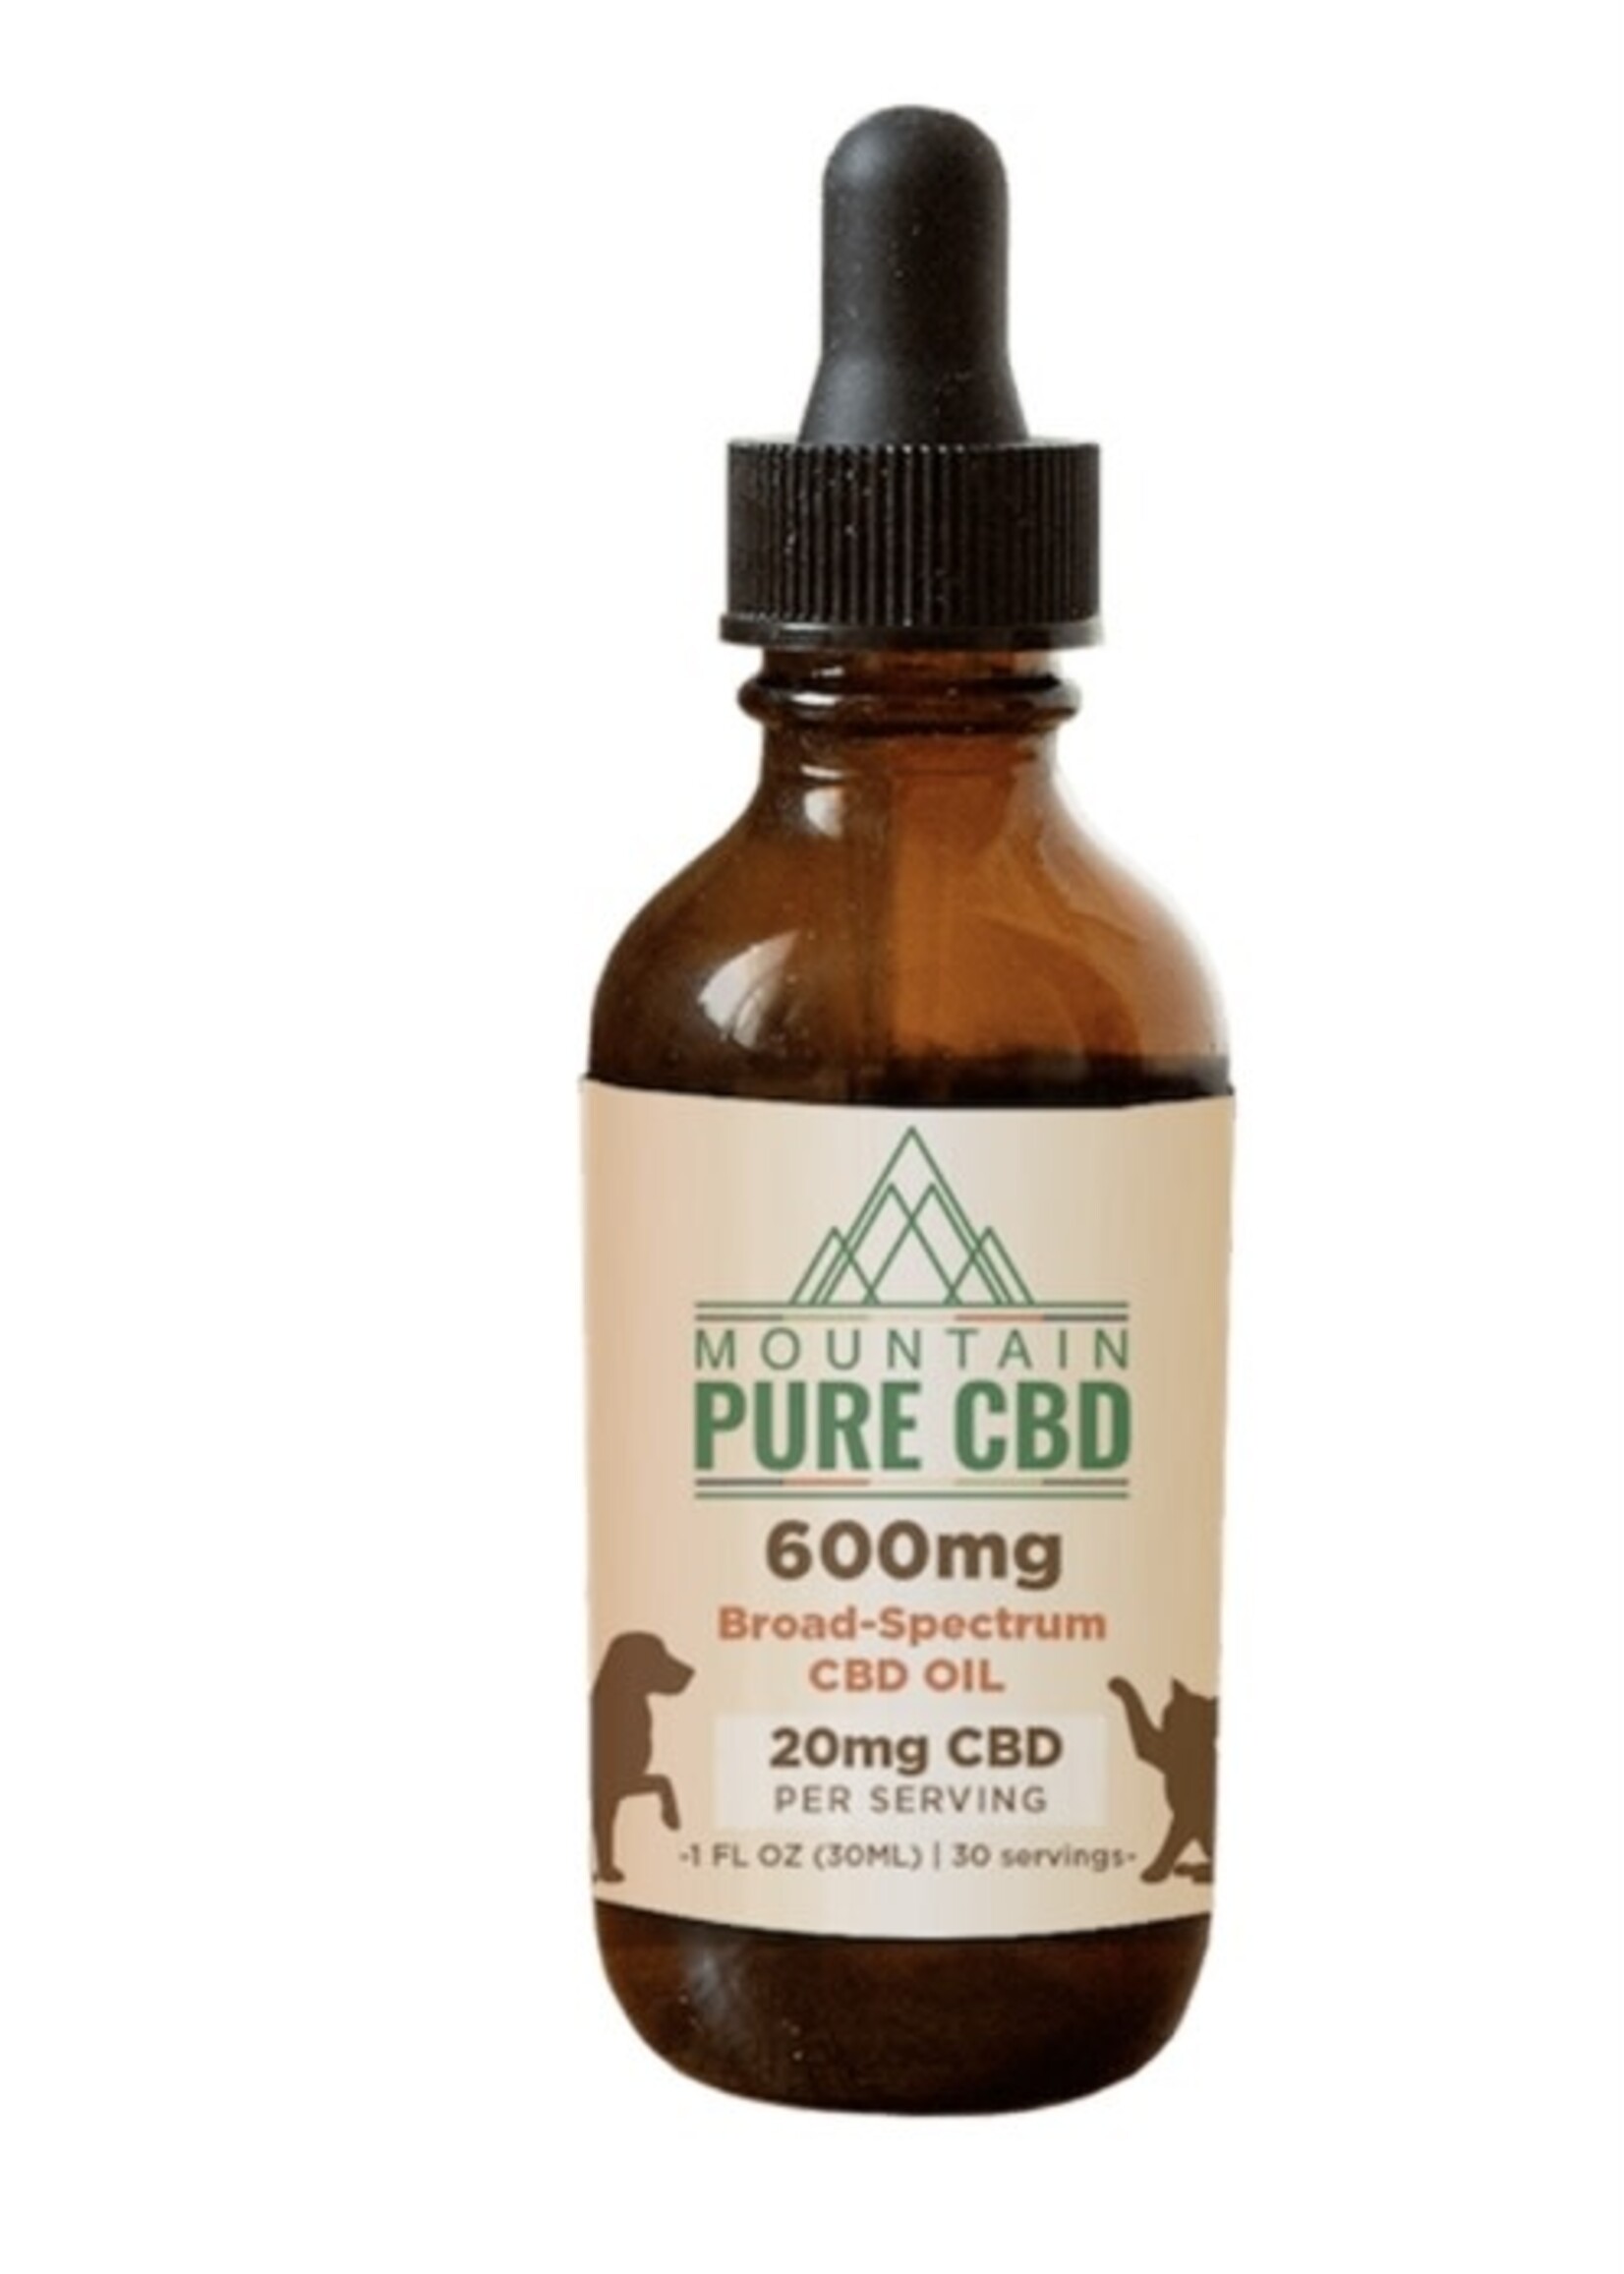 Mountain Pure Pet CBD oil